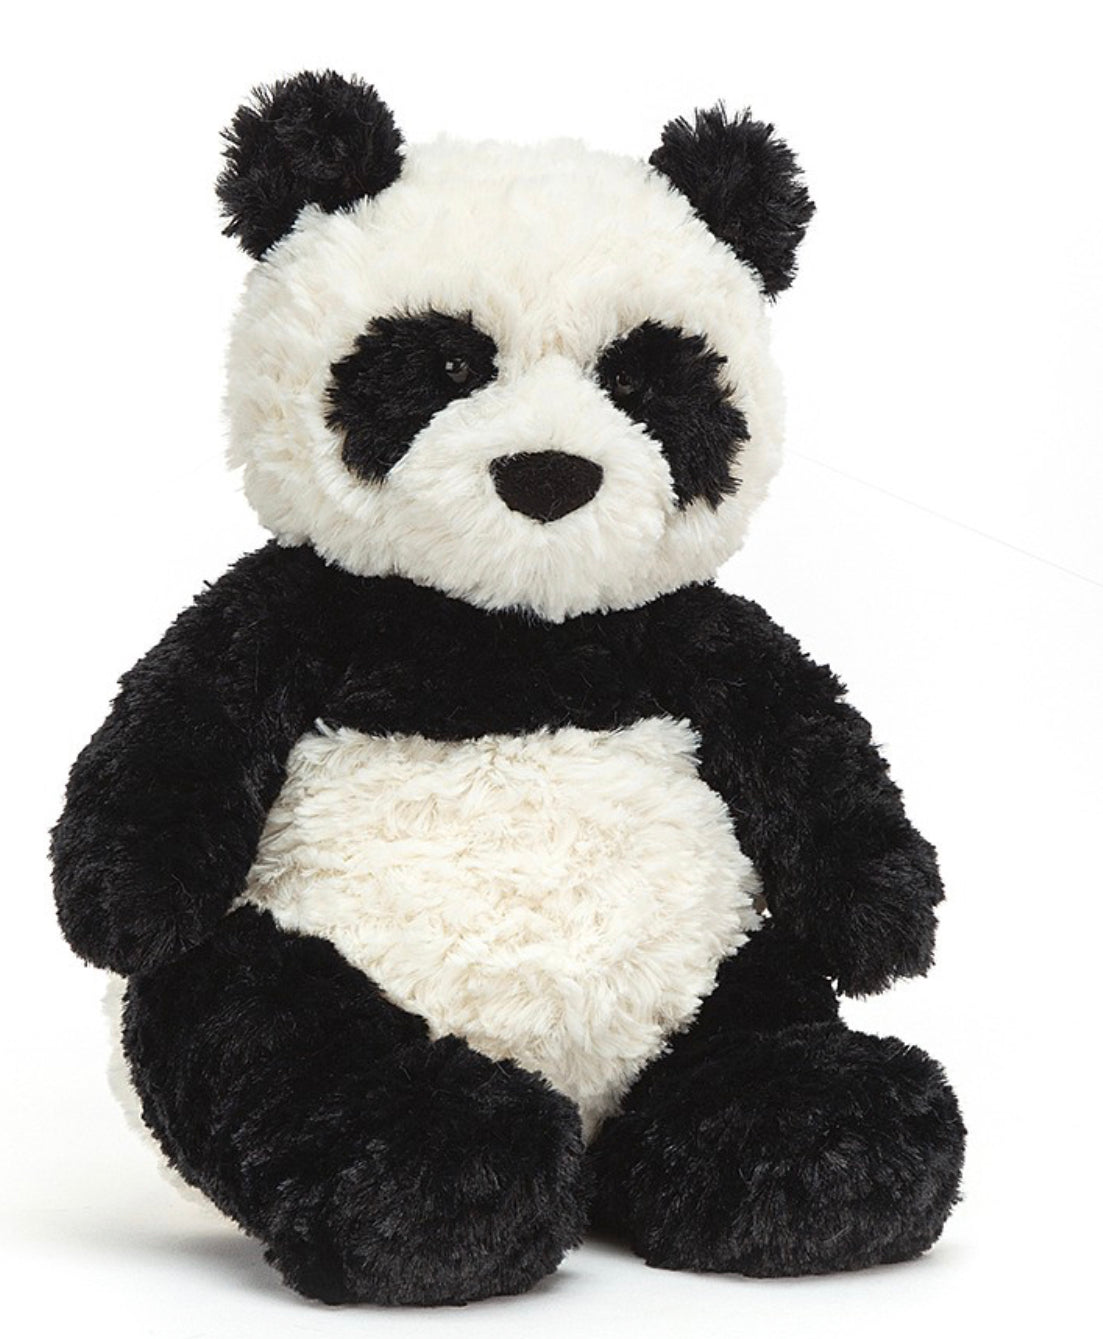 Montgomery Panda